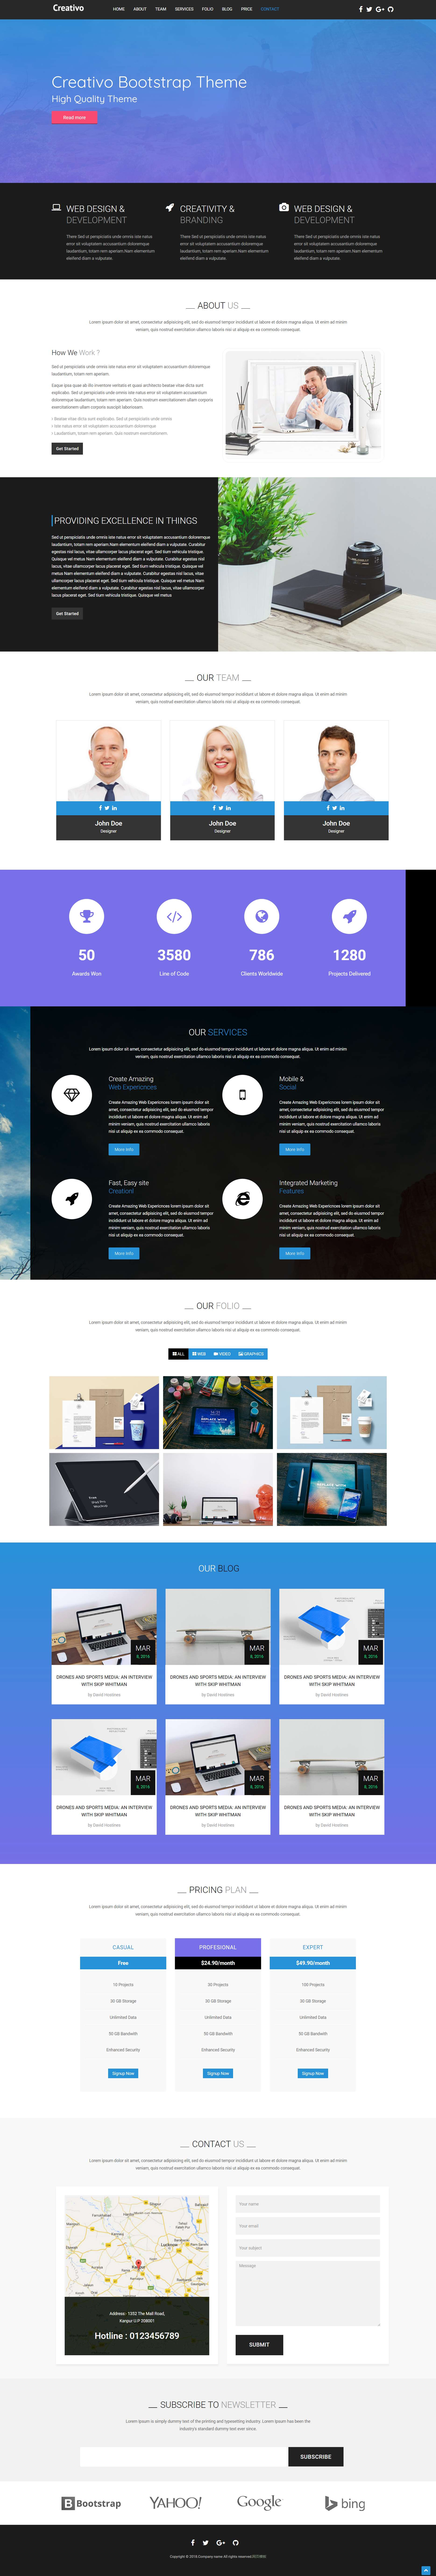 蓝色宽屏风格商务企业网页模板